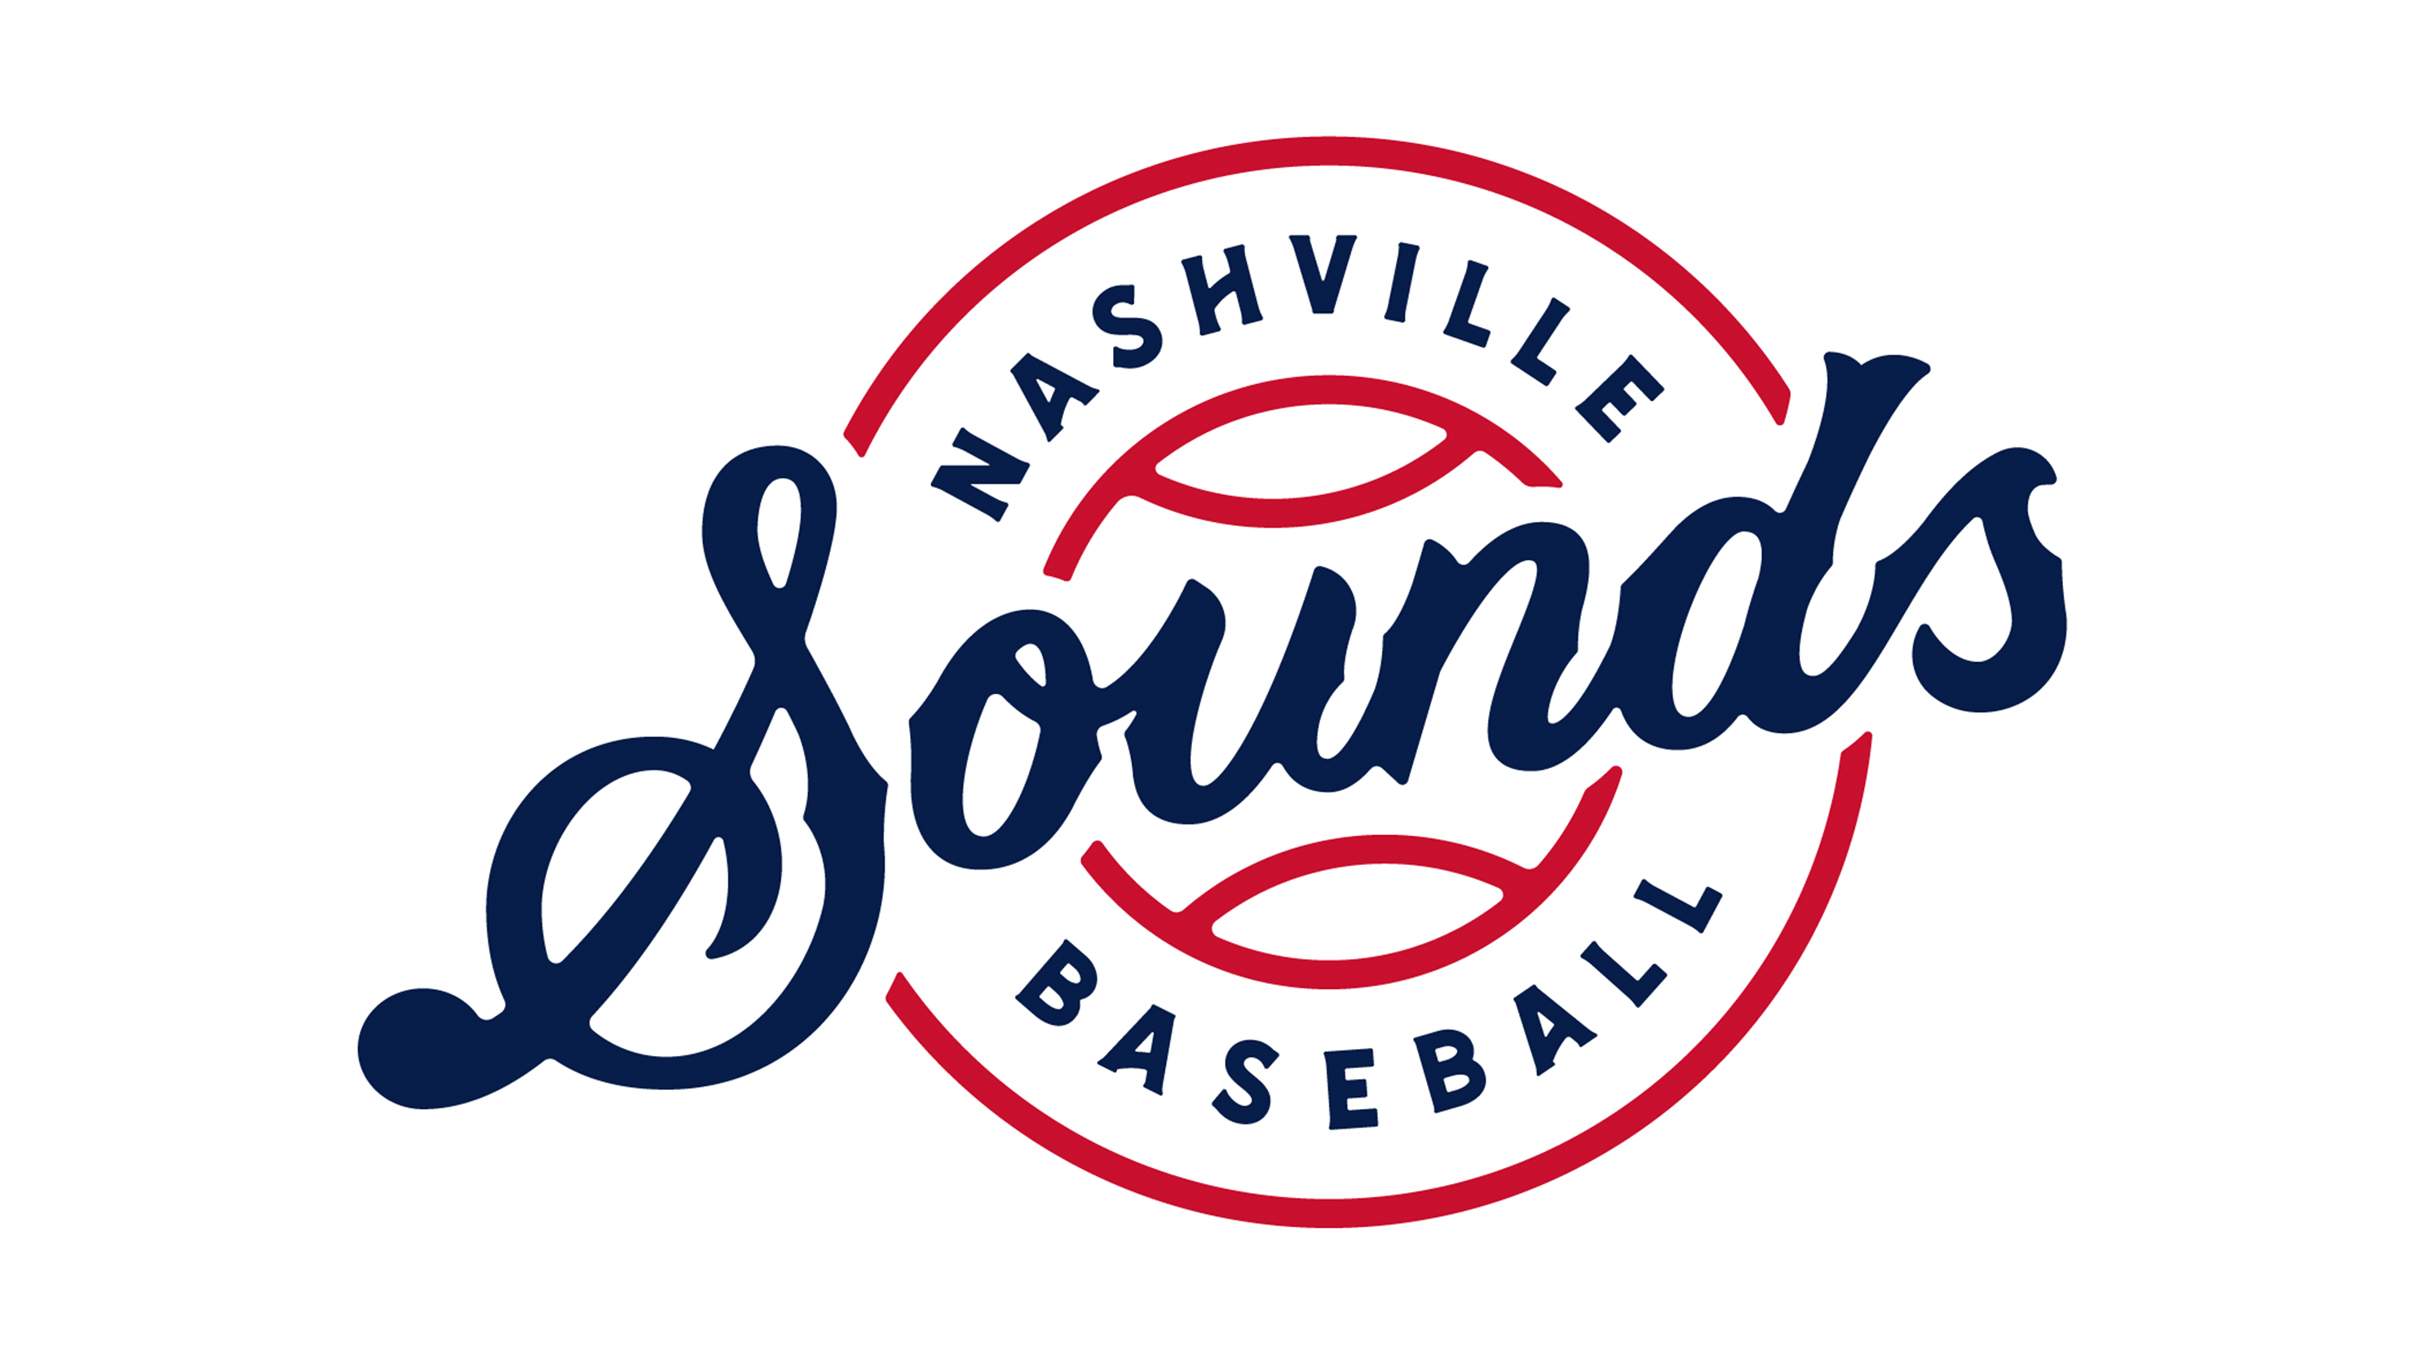 Nashville Sounds vs. Jacksonville Jumbo Shrimp